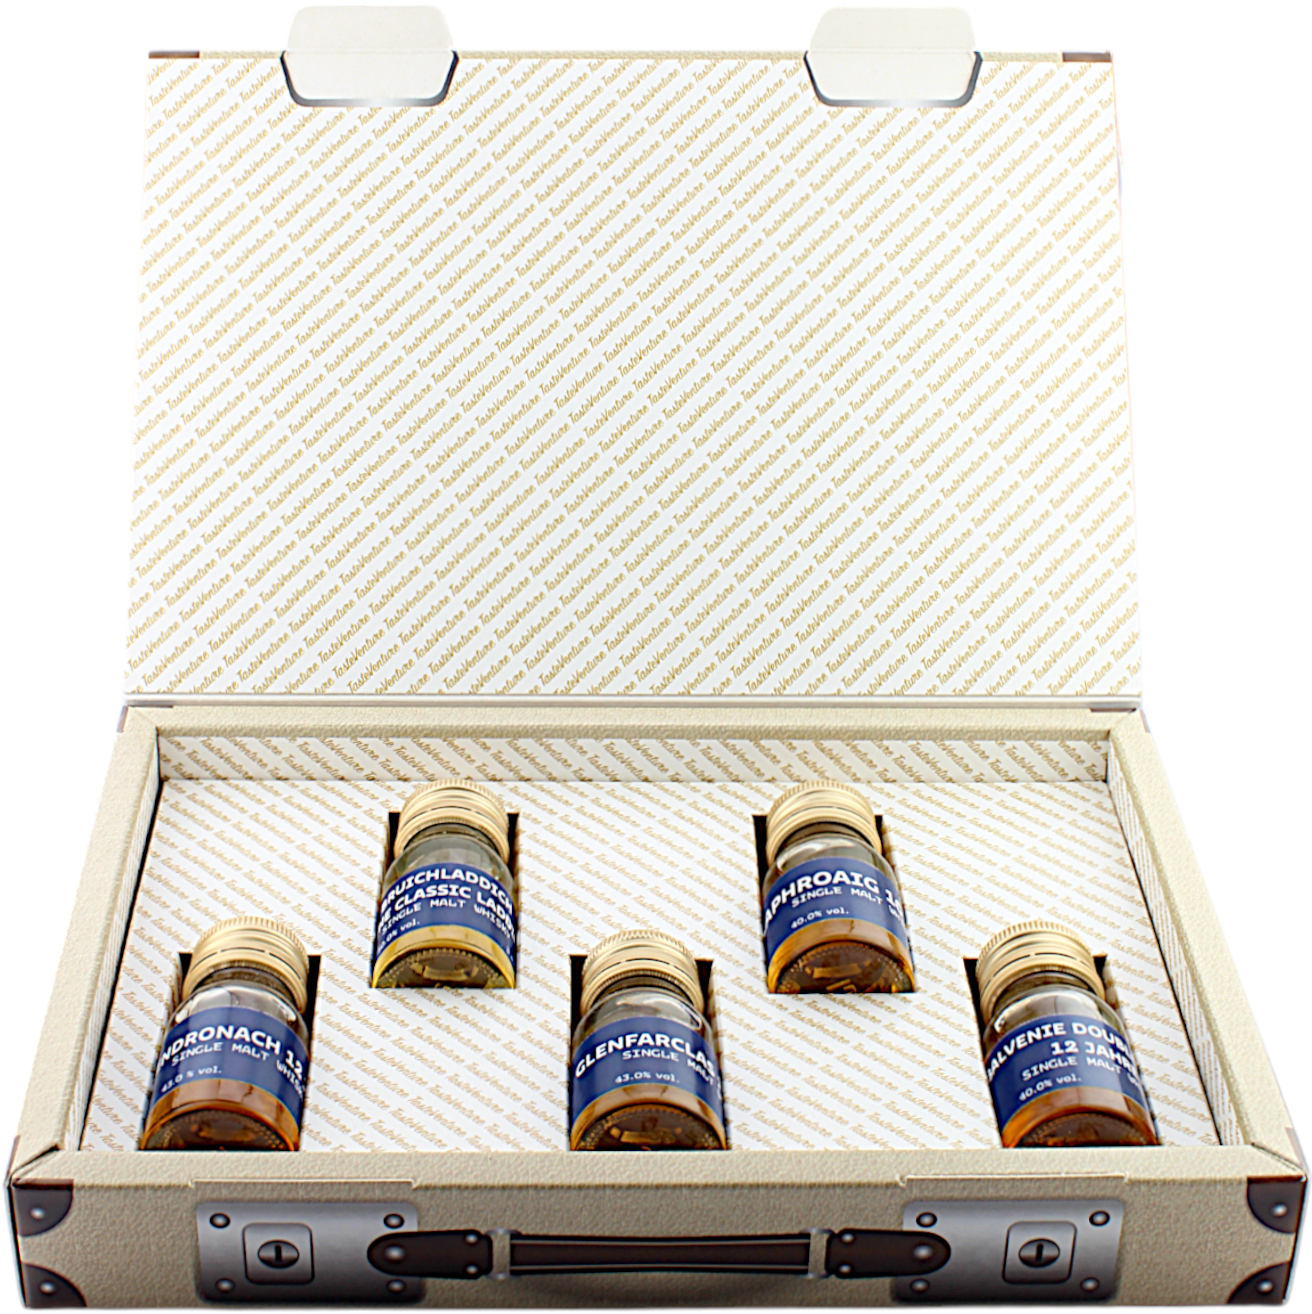 World of Whisky Tasting Box - Schottland für Einsteiger - Whisky Roadtrip 43.2% 5x30ml - Tasteventure